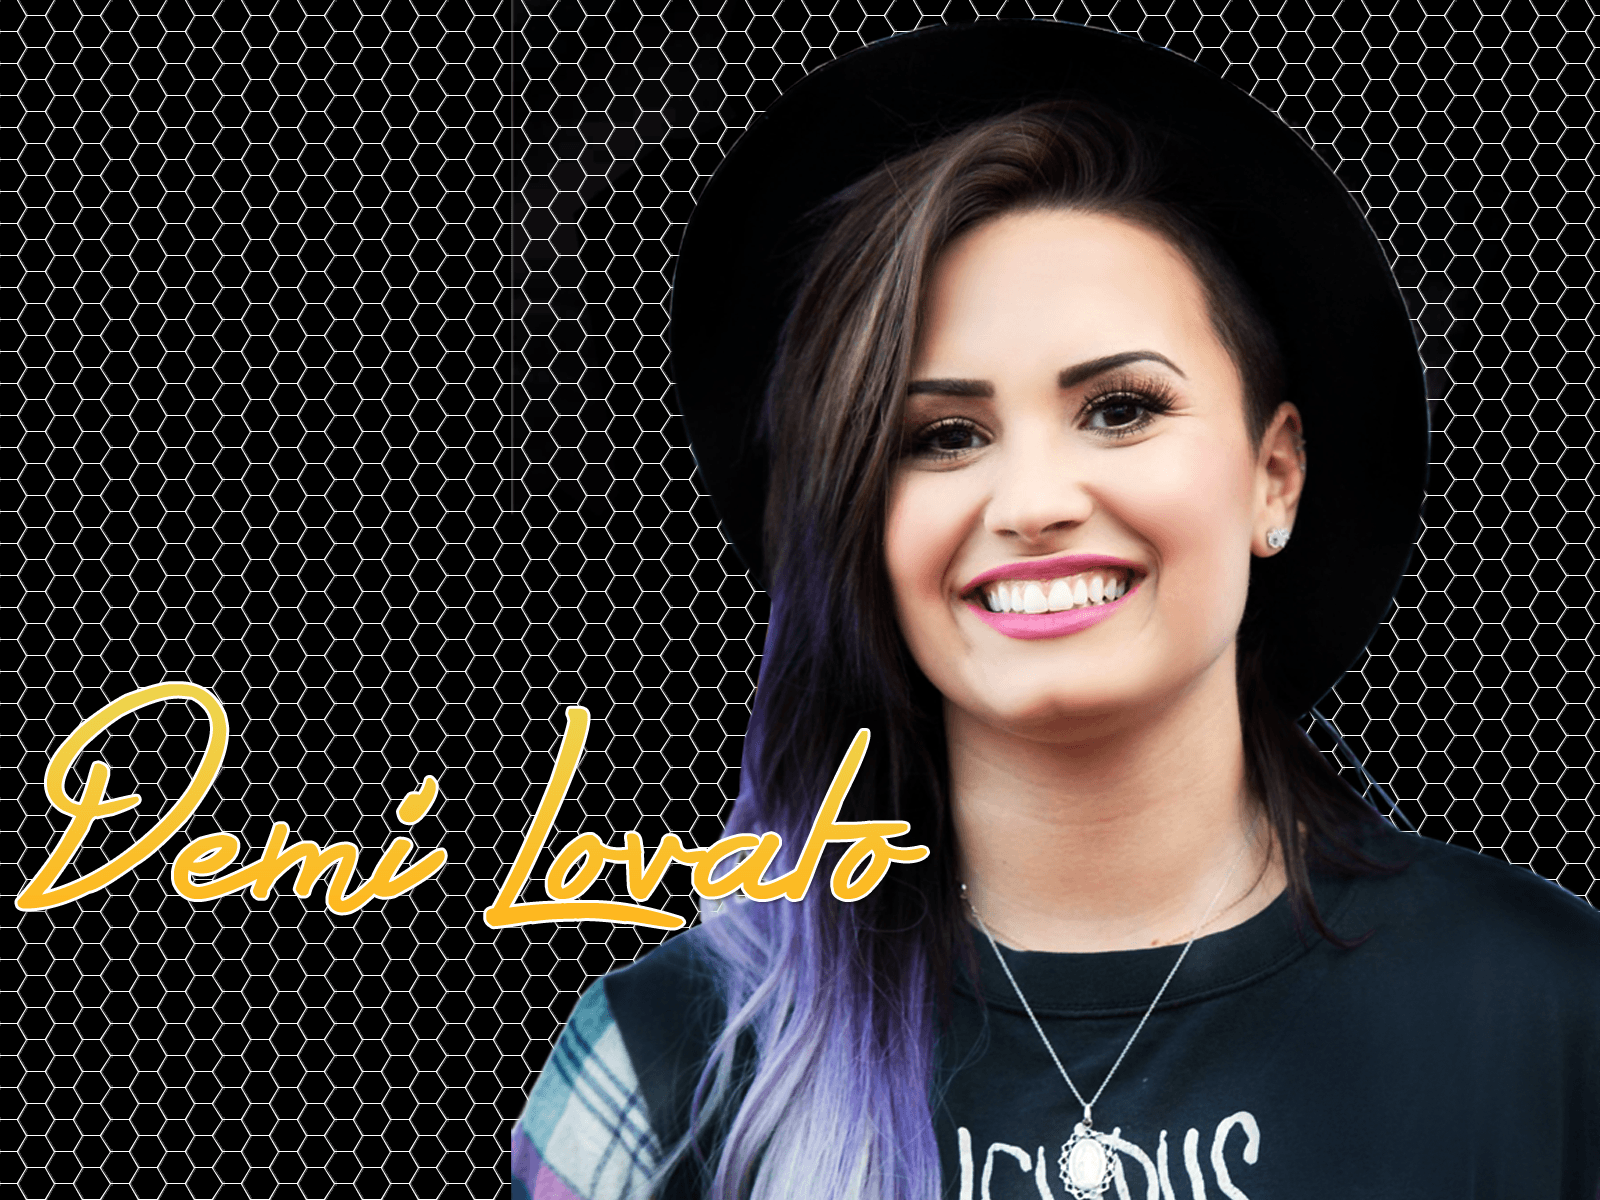 Demi Lovato Hd Wallpapers 2016 Wallpaper Cave 4727